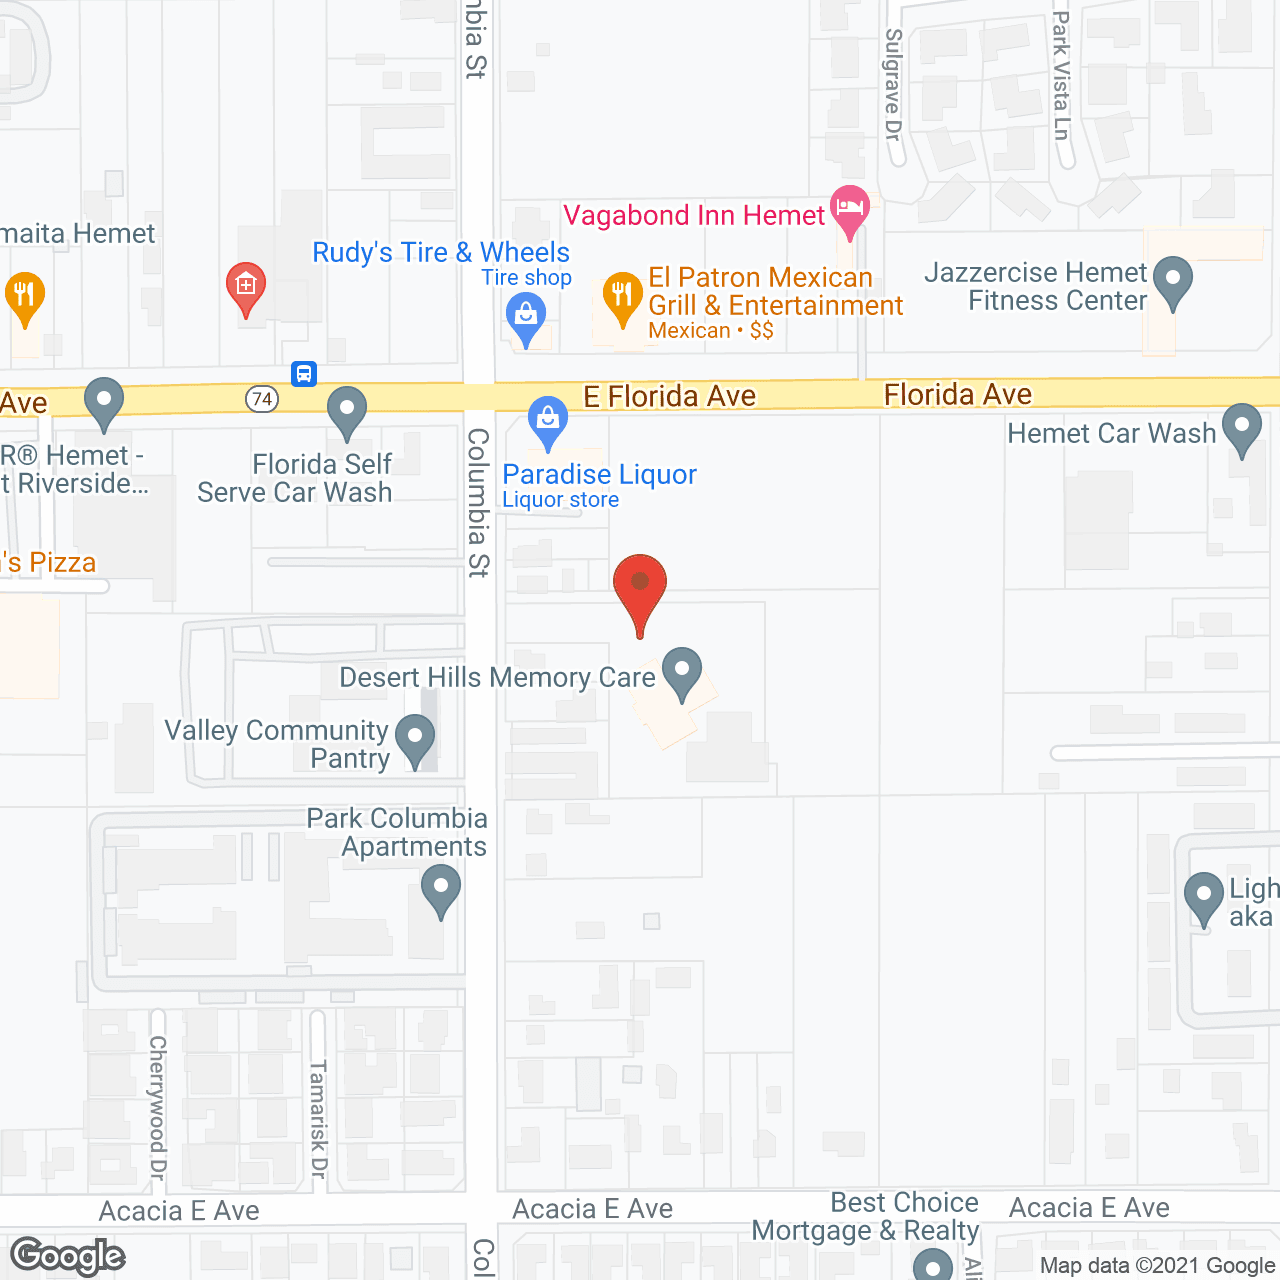 Desert Hills Memory Care Center in google map